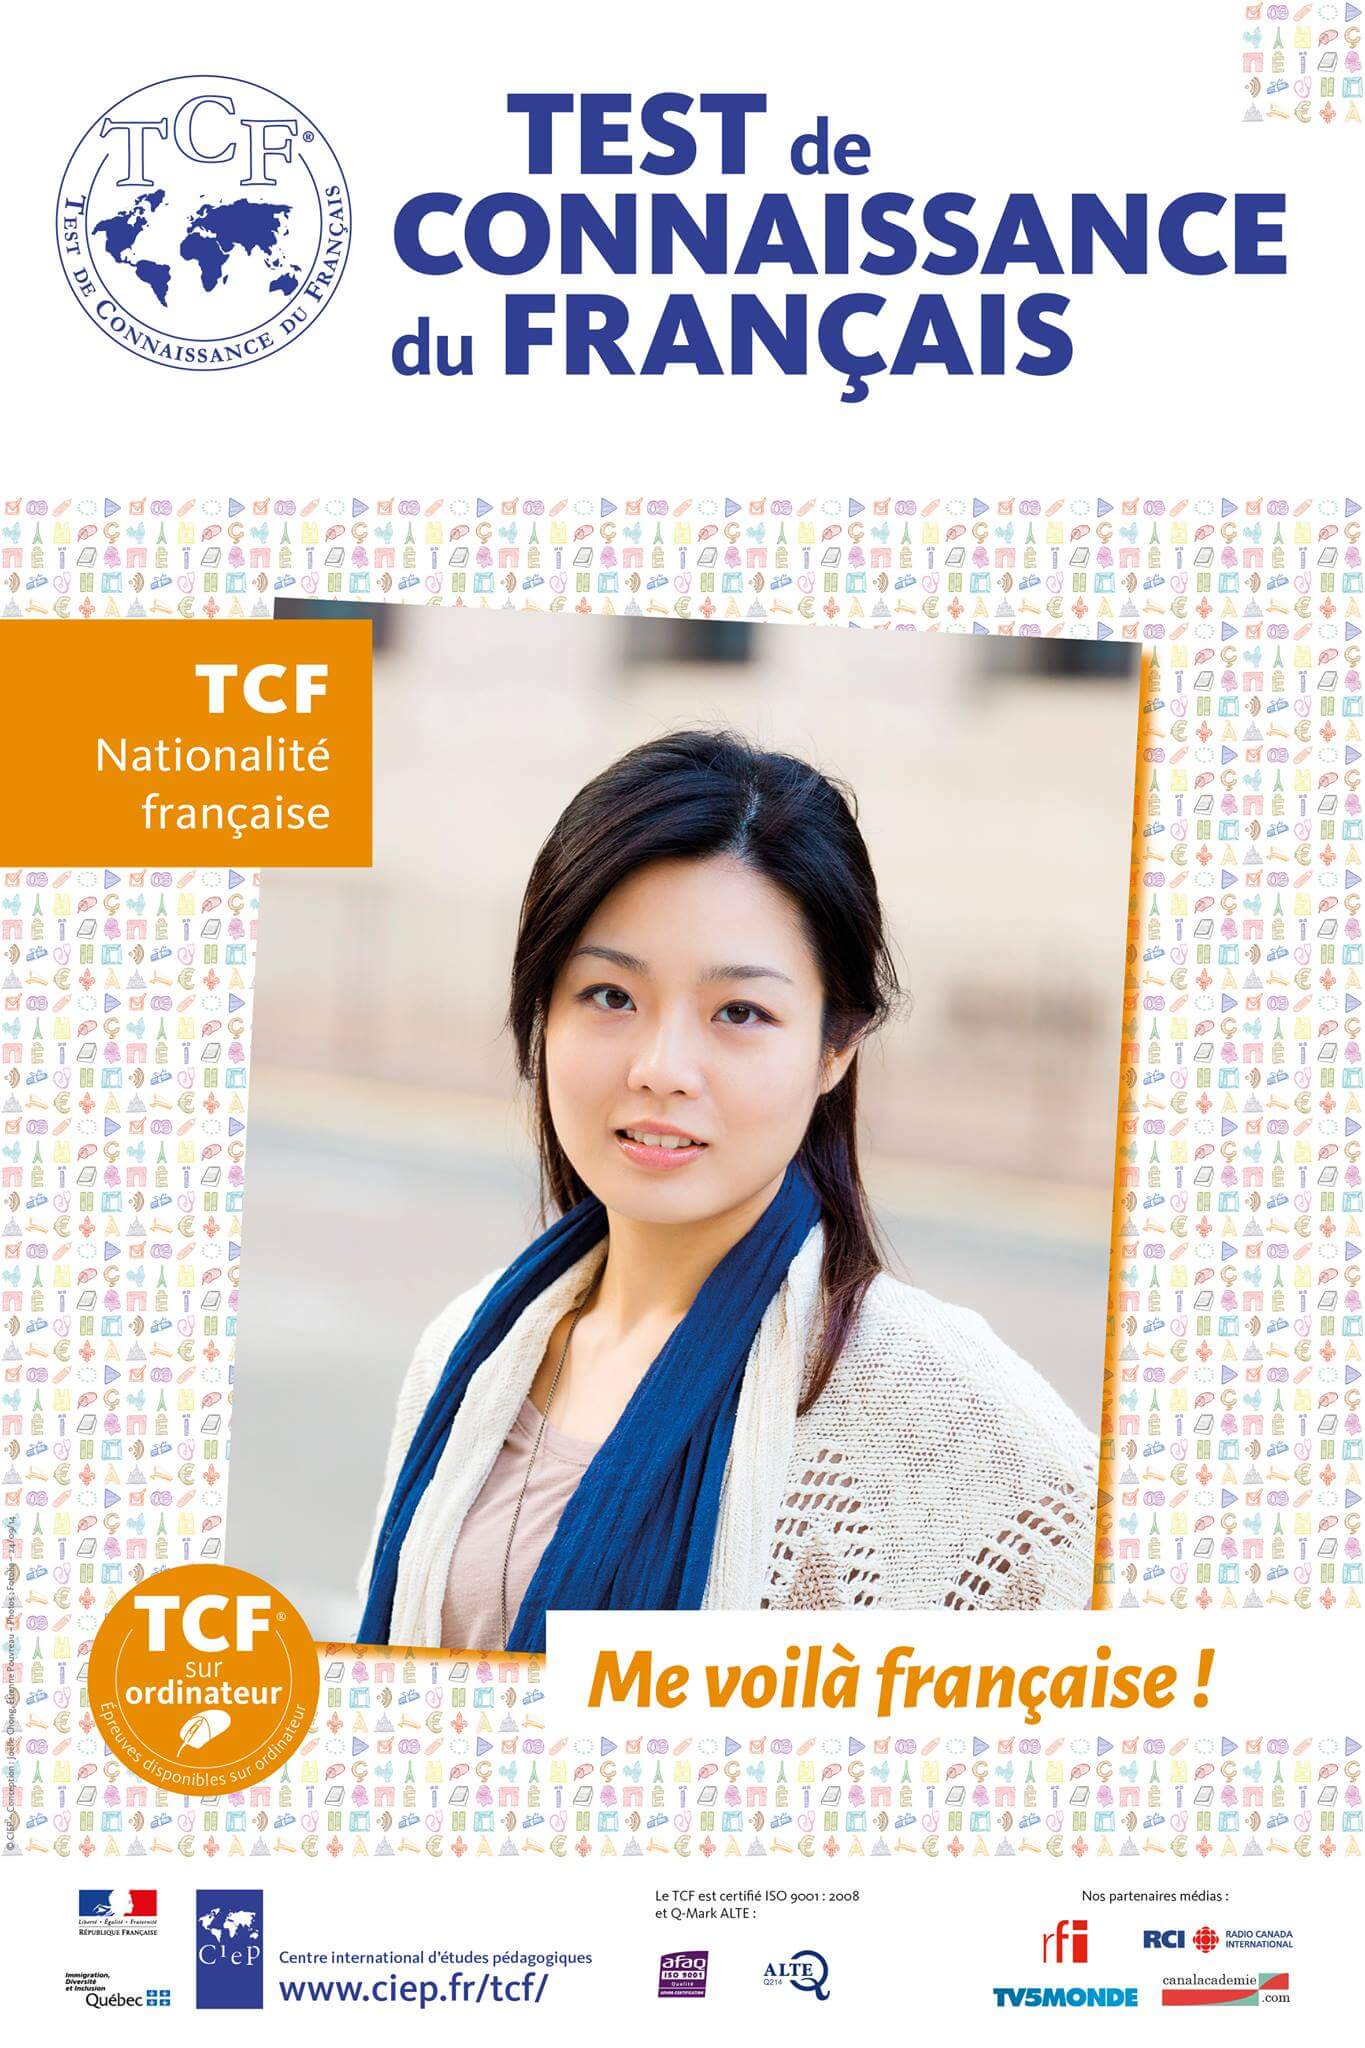 TCF French Exam Preparation in Paris and Online - Cours de préparation au TCF, tcf training courses, TCF French course in Paris, France